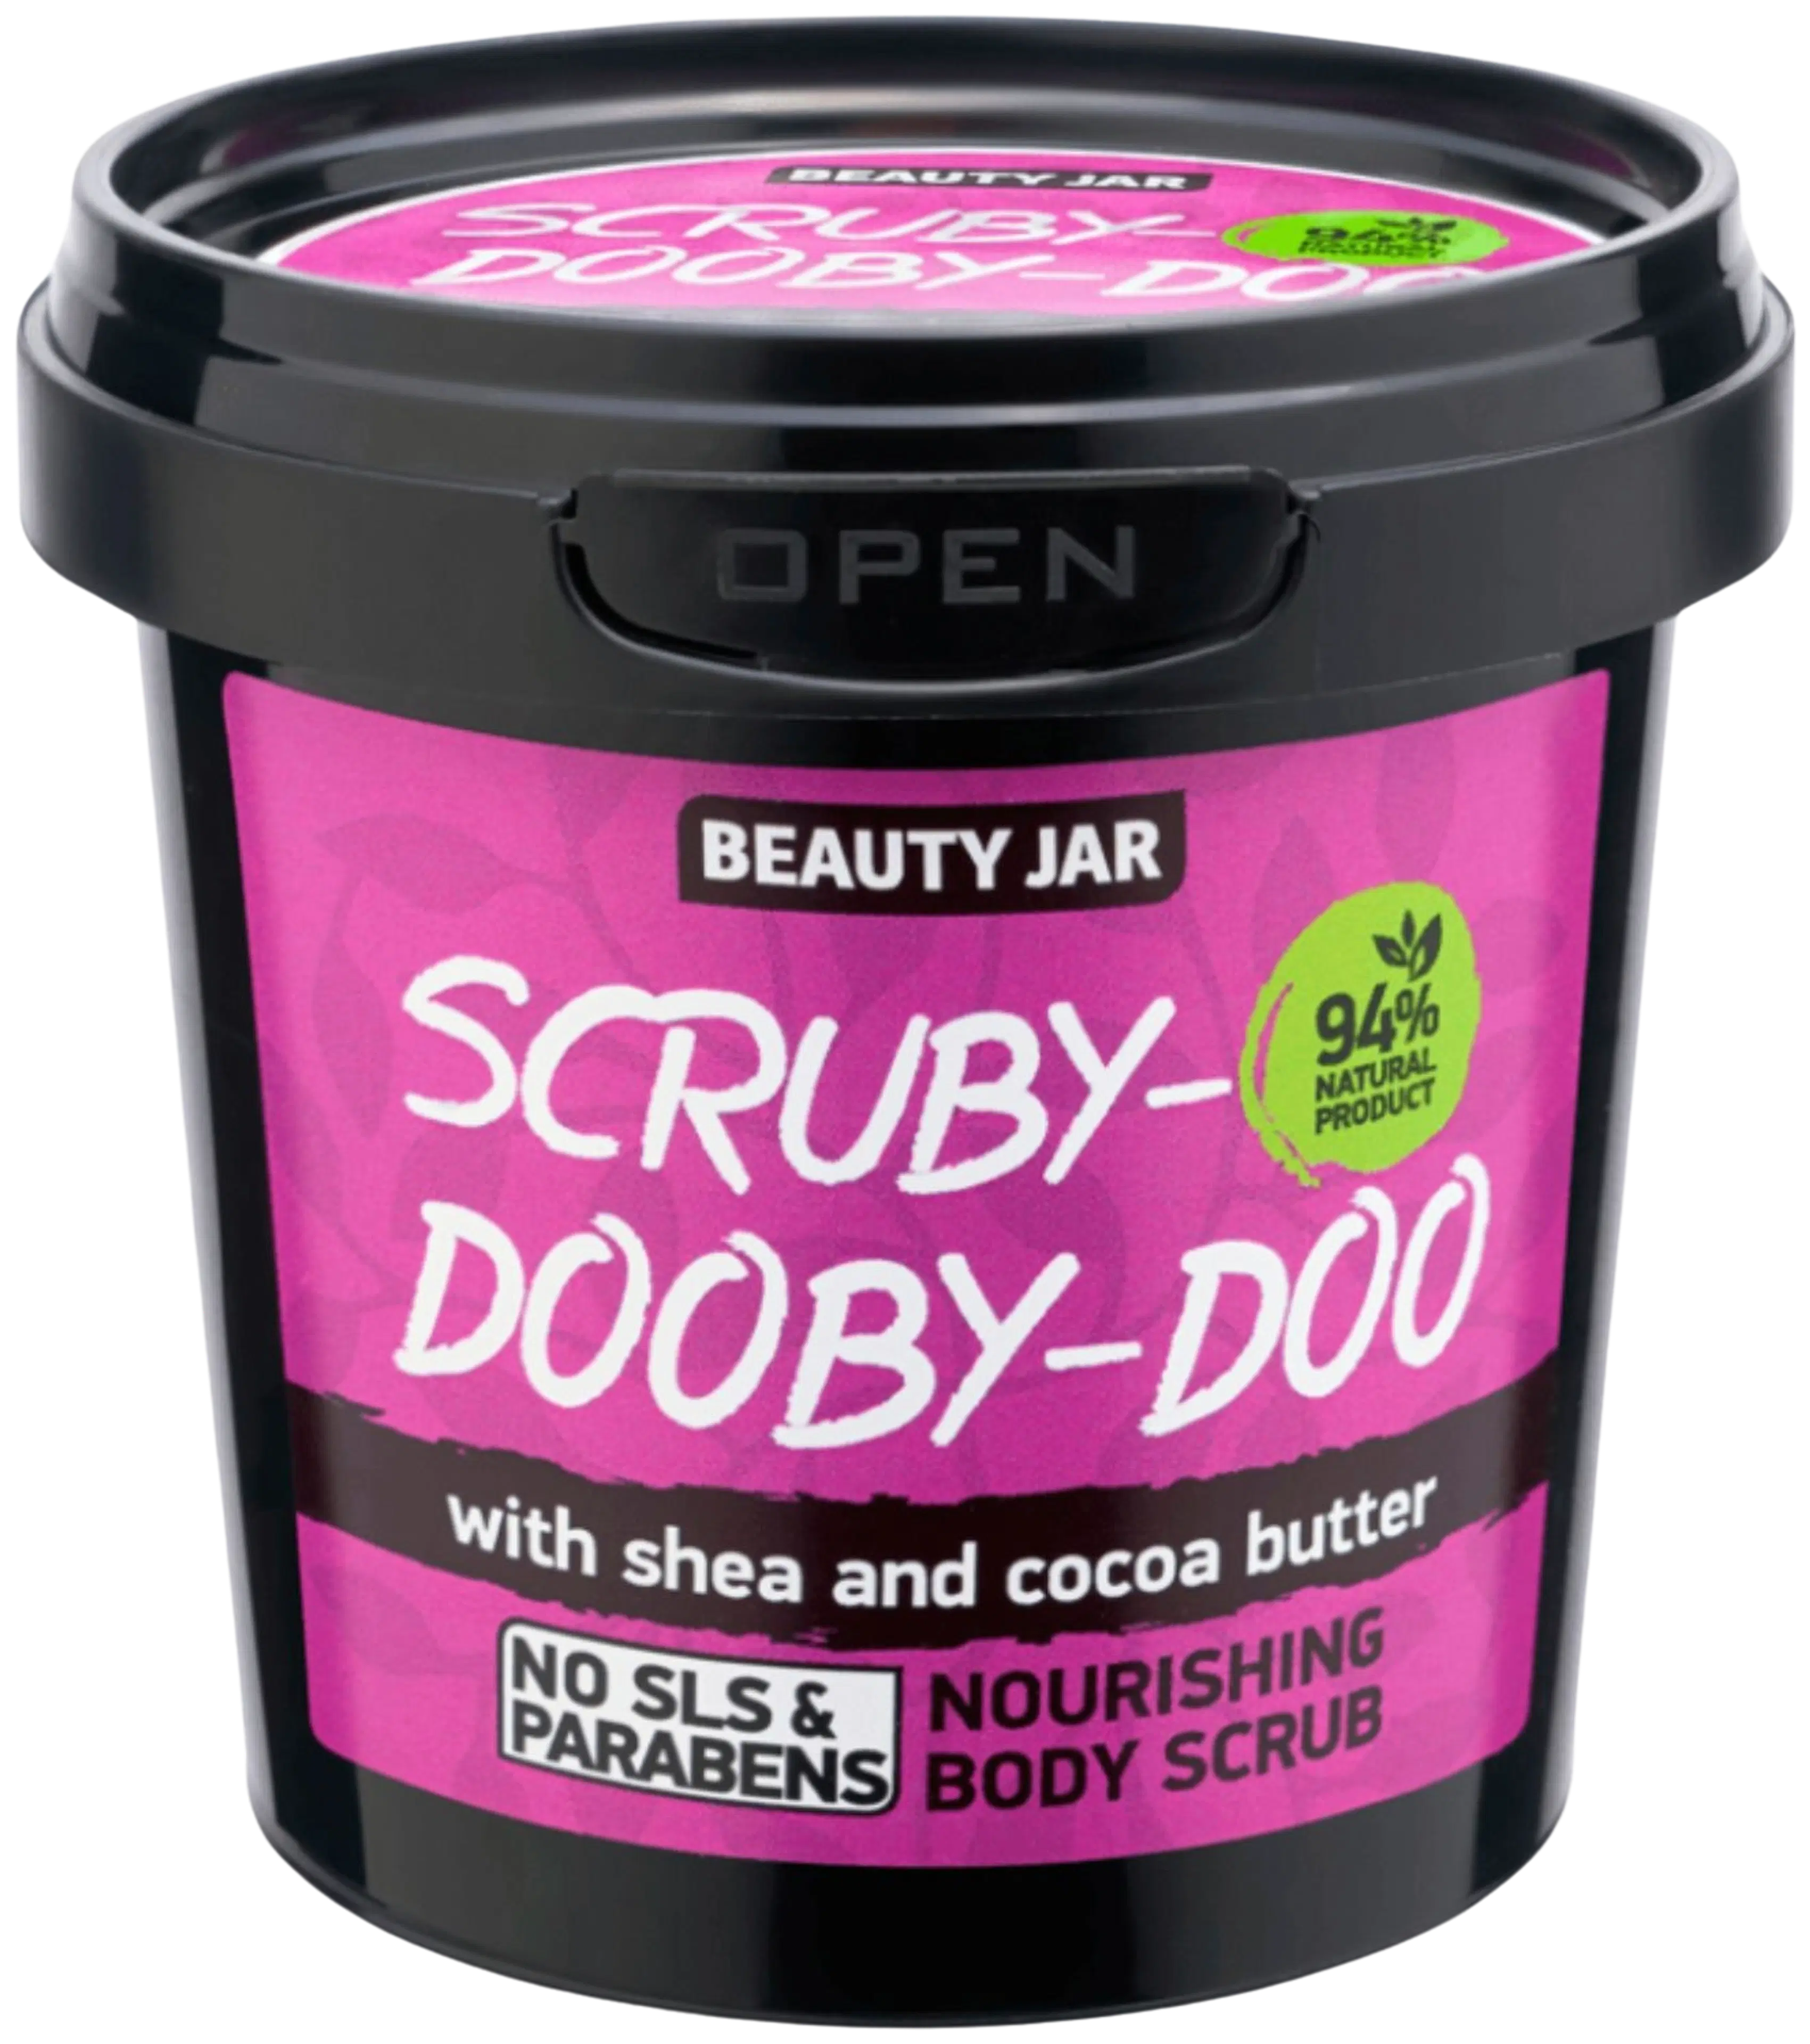 Beauty Jar Scruby-Dooby-Doo Body Scrub vartalokuorinta 200 g